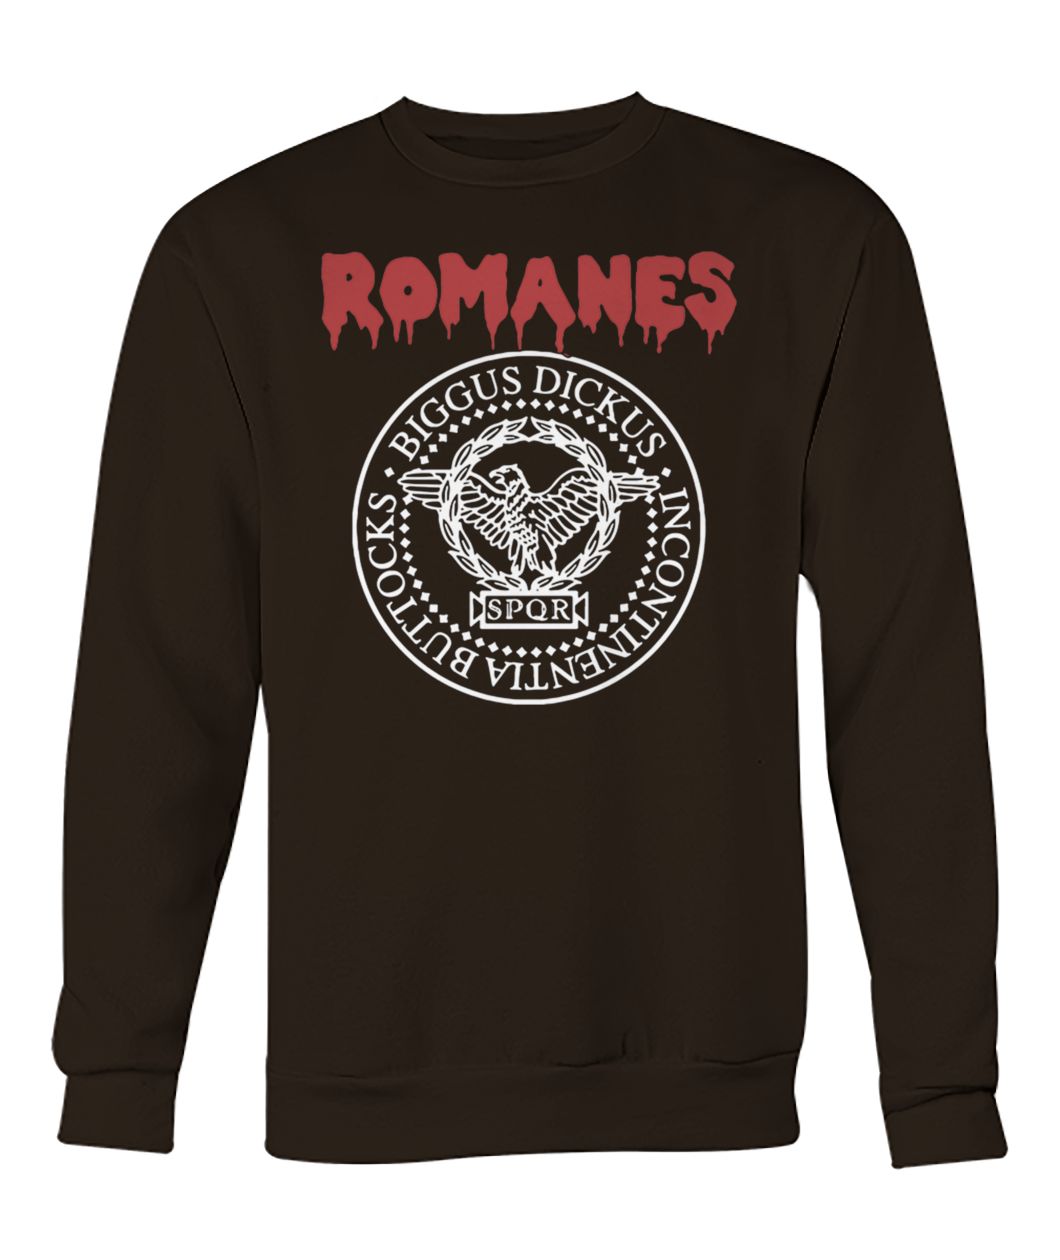 Romanes biggus dickus incontinentia buttocks SPQR crew neck sweatshirt